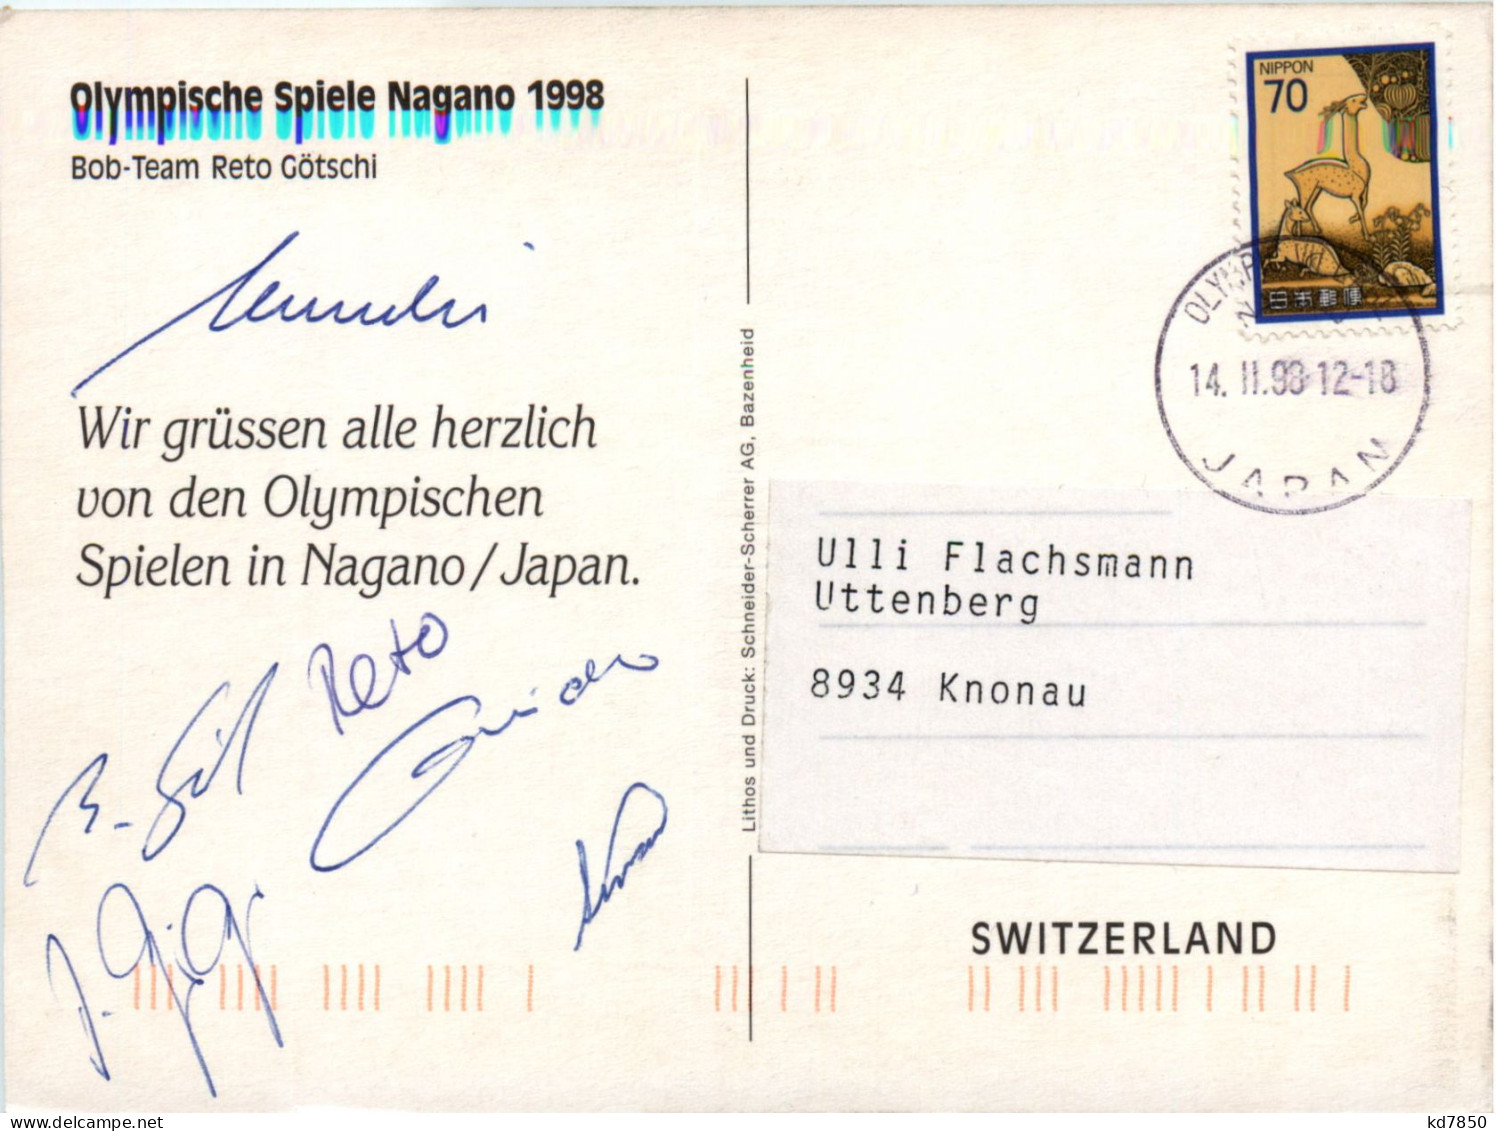 Bob Tea Reto Götschi Olympische Spiele Nagano 1988 Mit Unterschriften - Wintersport